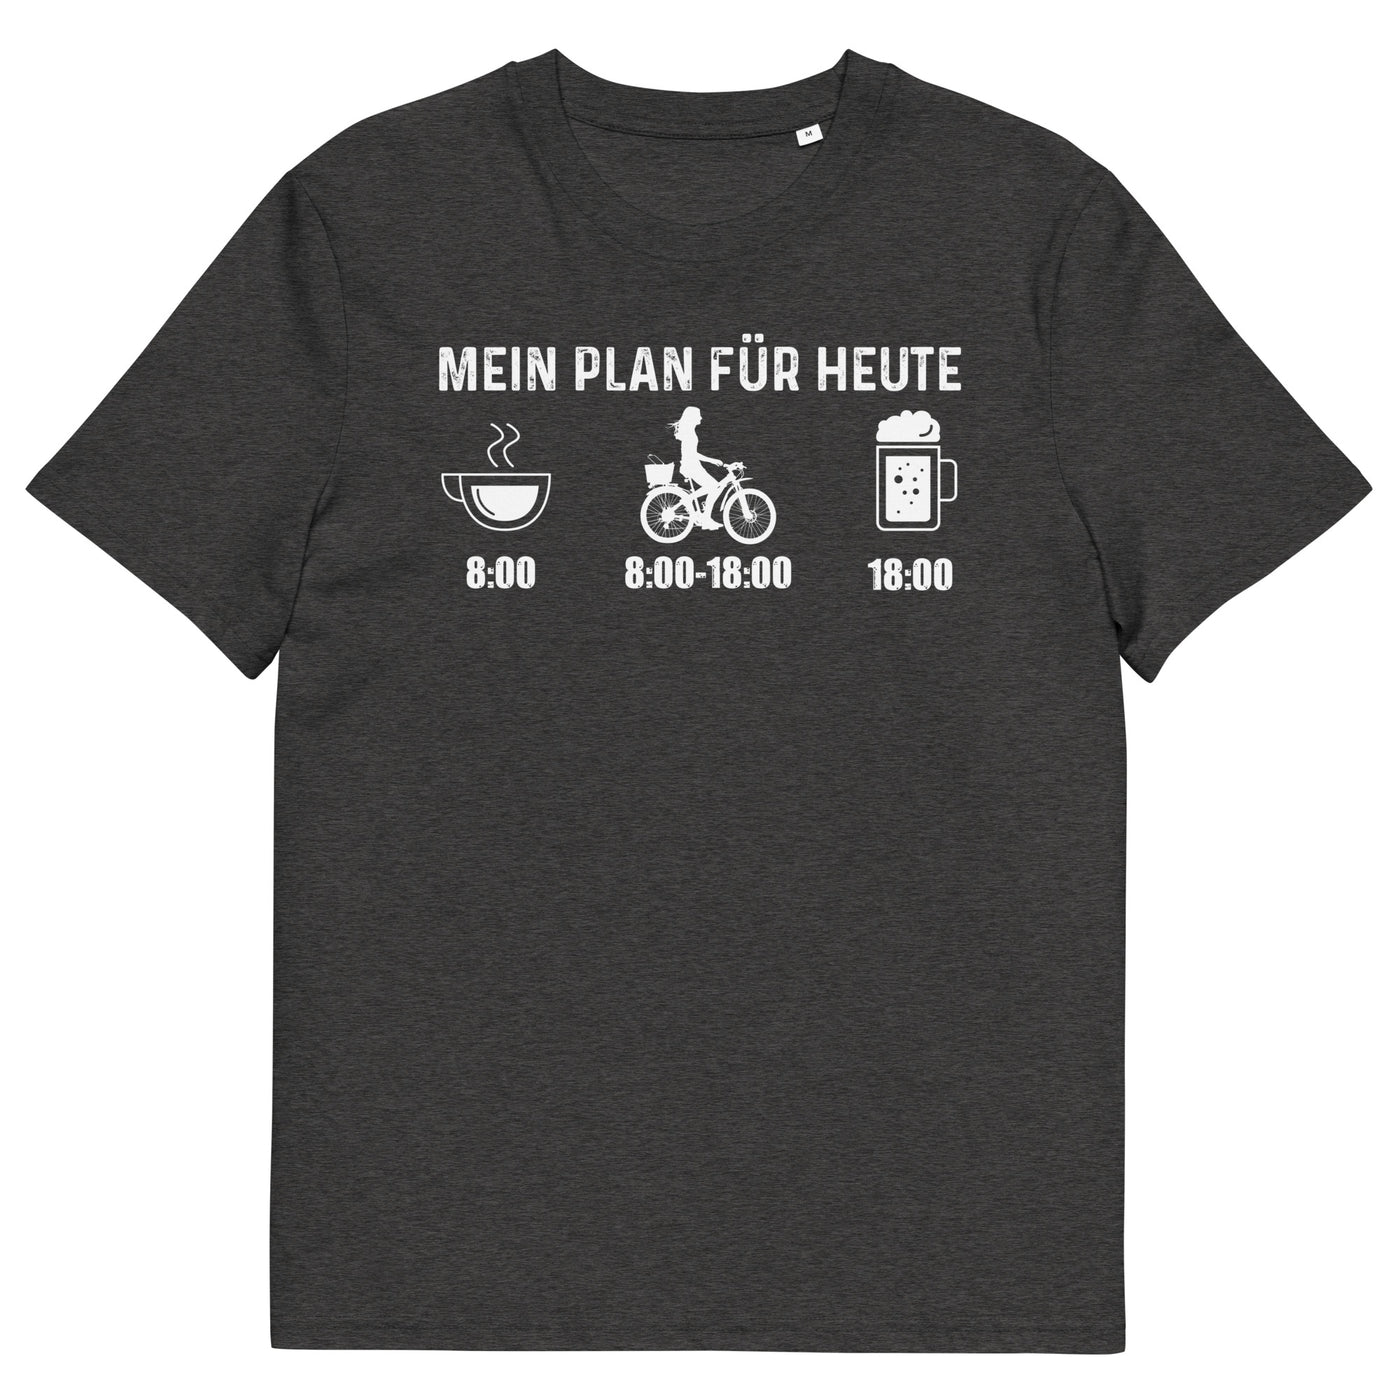 Mein Plan Für Heute 2 - Herren Premium Organic T-Shirt fahrrad xxx yyy zzz Dark Heather Grey